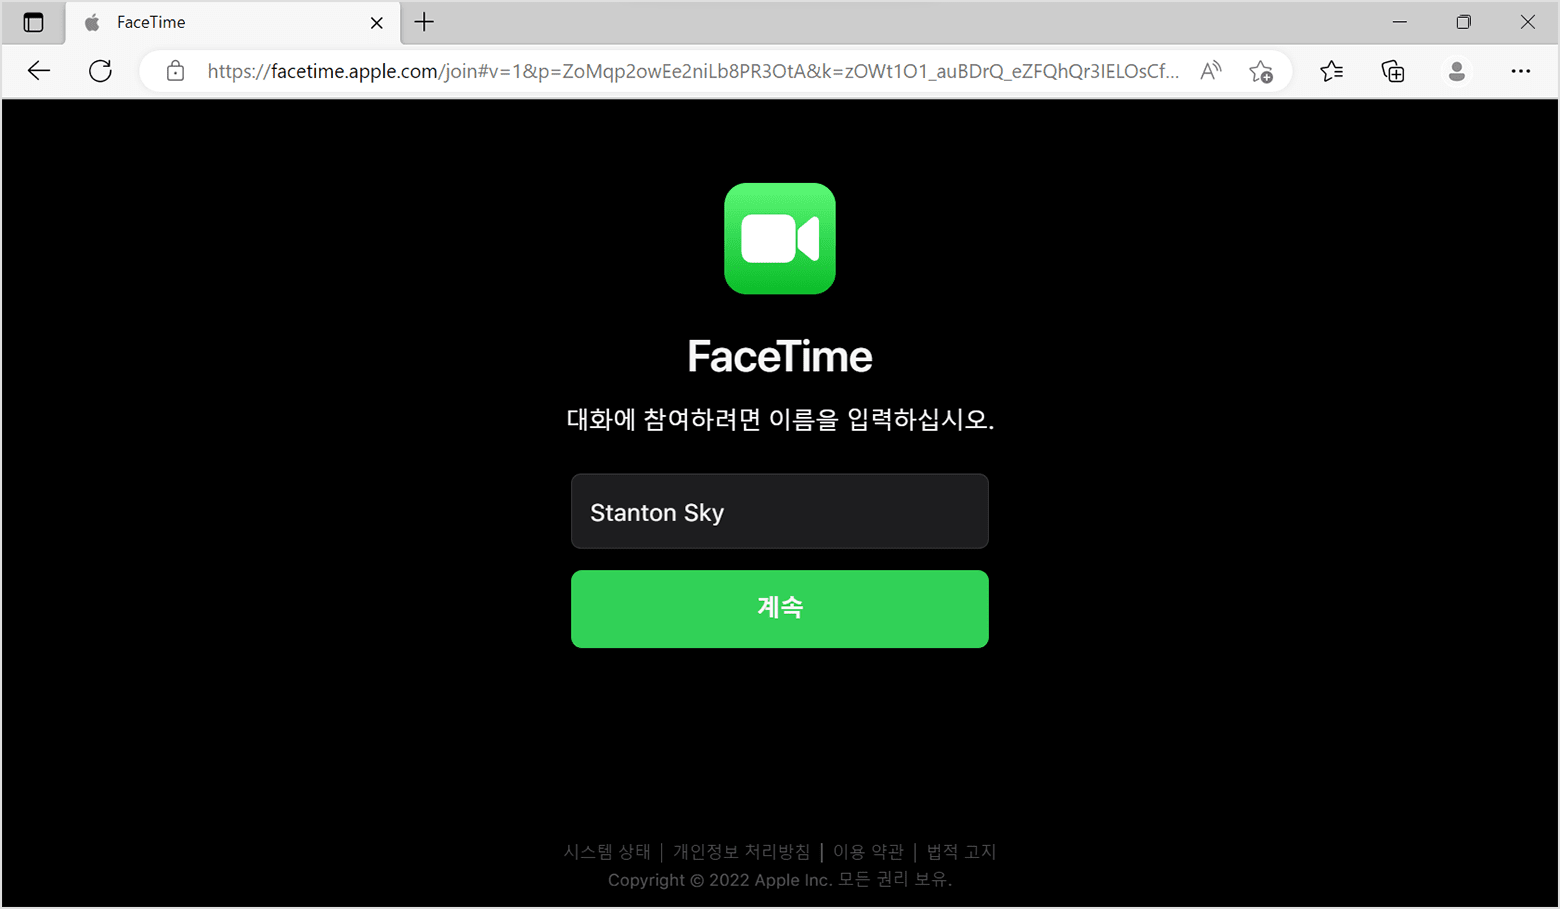 FaceTime 브라우저 윈도우: 이름 입력